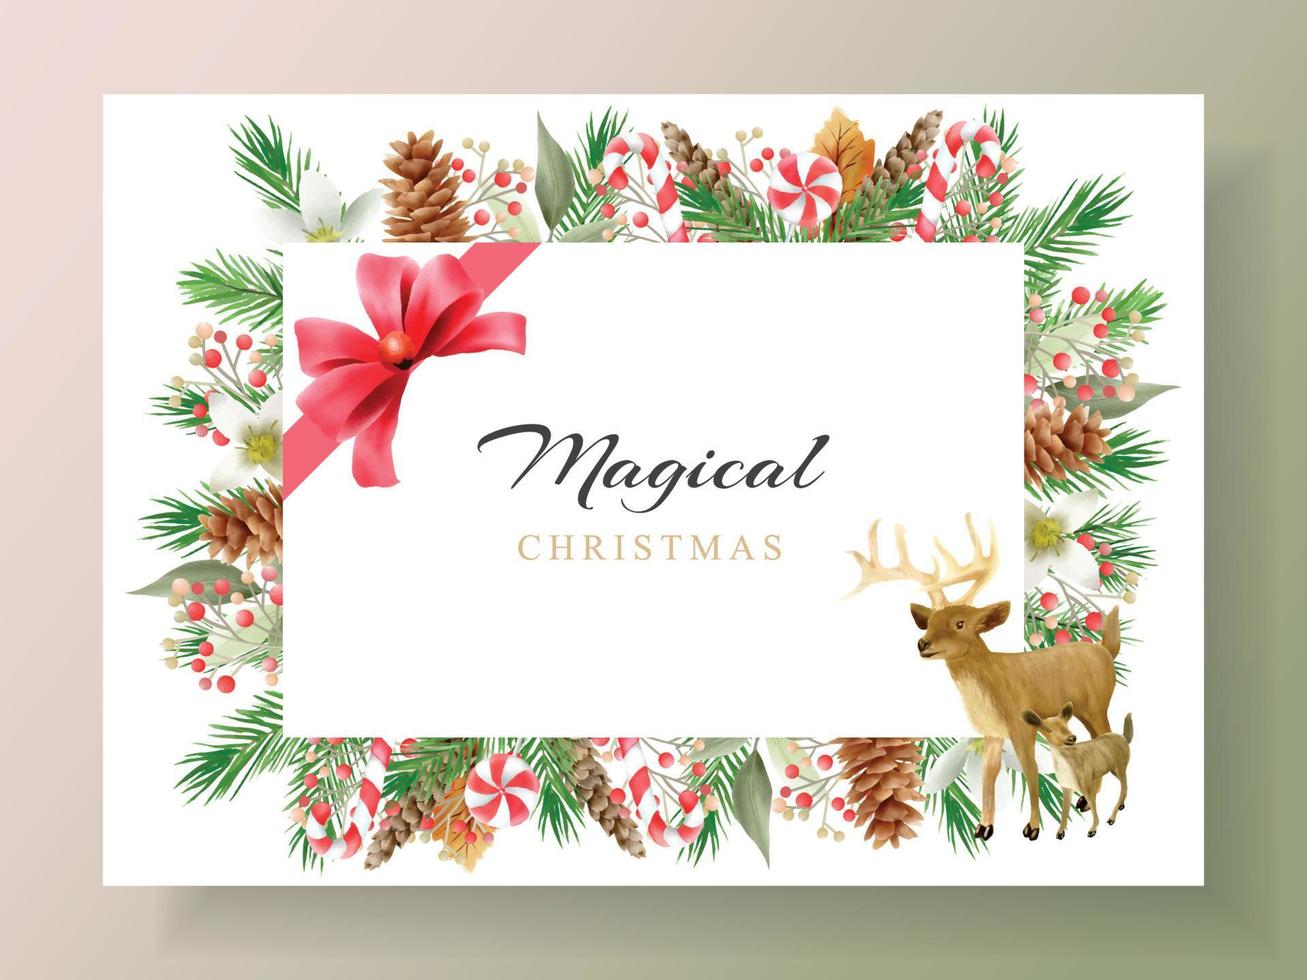 inbjudan och vykort med illustration av djur- och jul element vektor